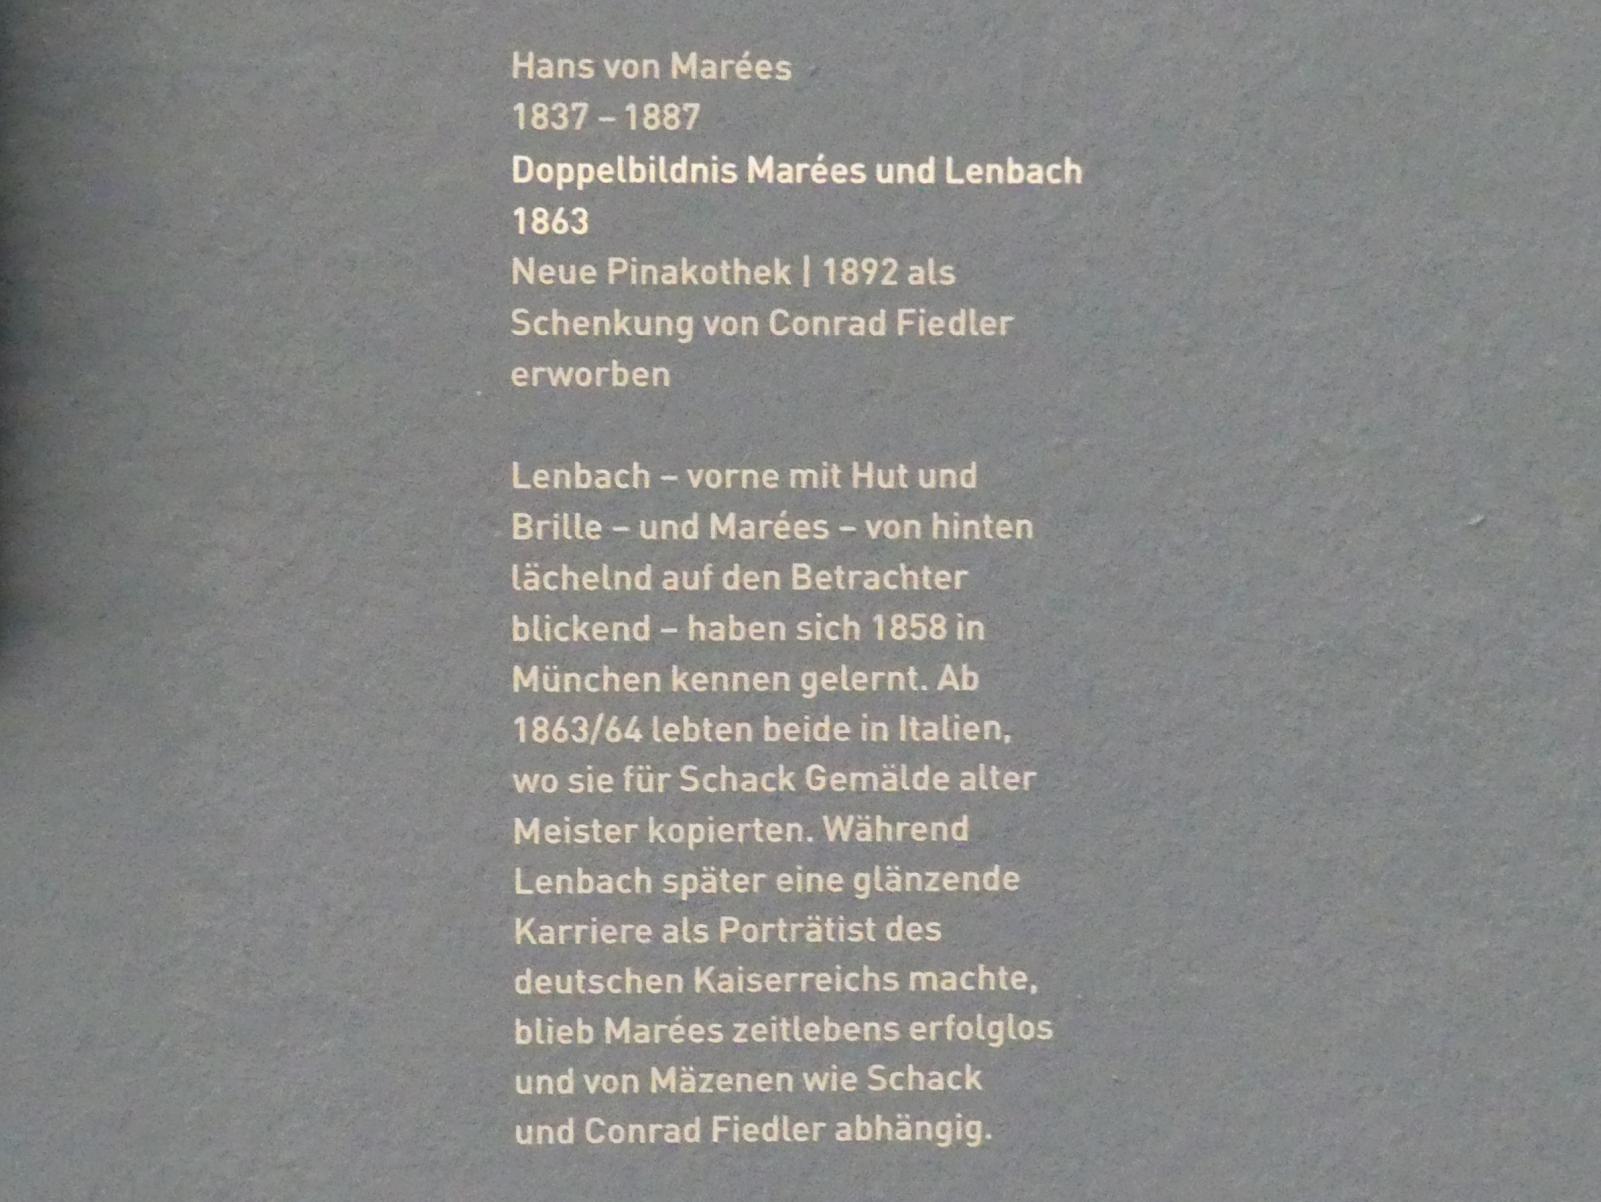 Hans von Marées (1861–1886), Doppelbildnis Marées und Lenbach, München, Neue Pinakothek in der Sammlung Schack, Saal 16, 1863, Bild 2/2